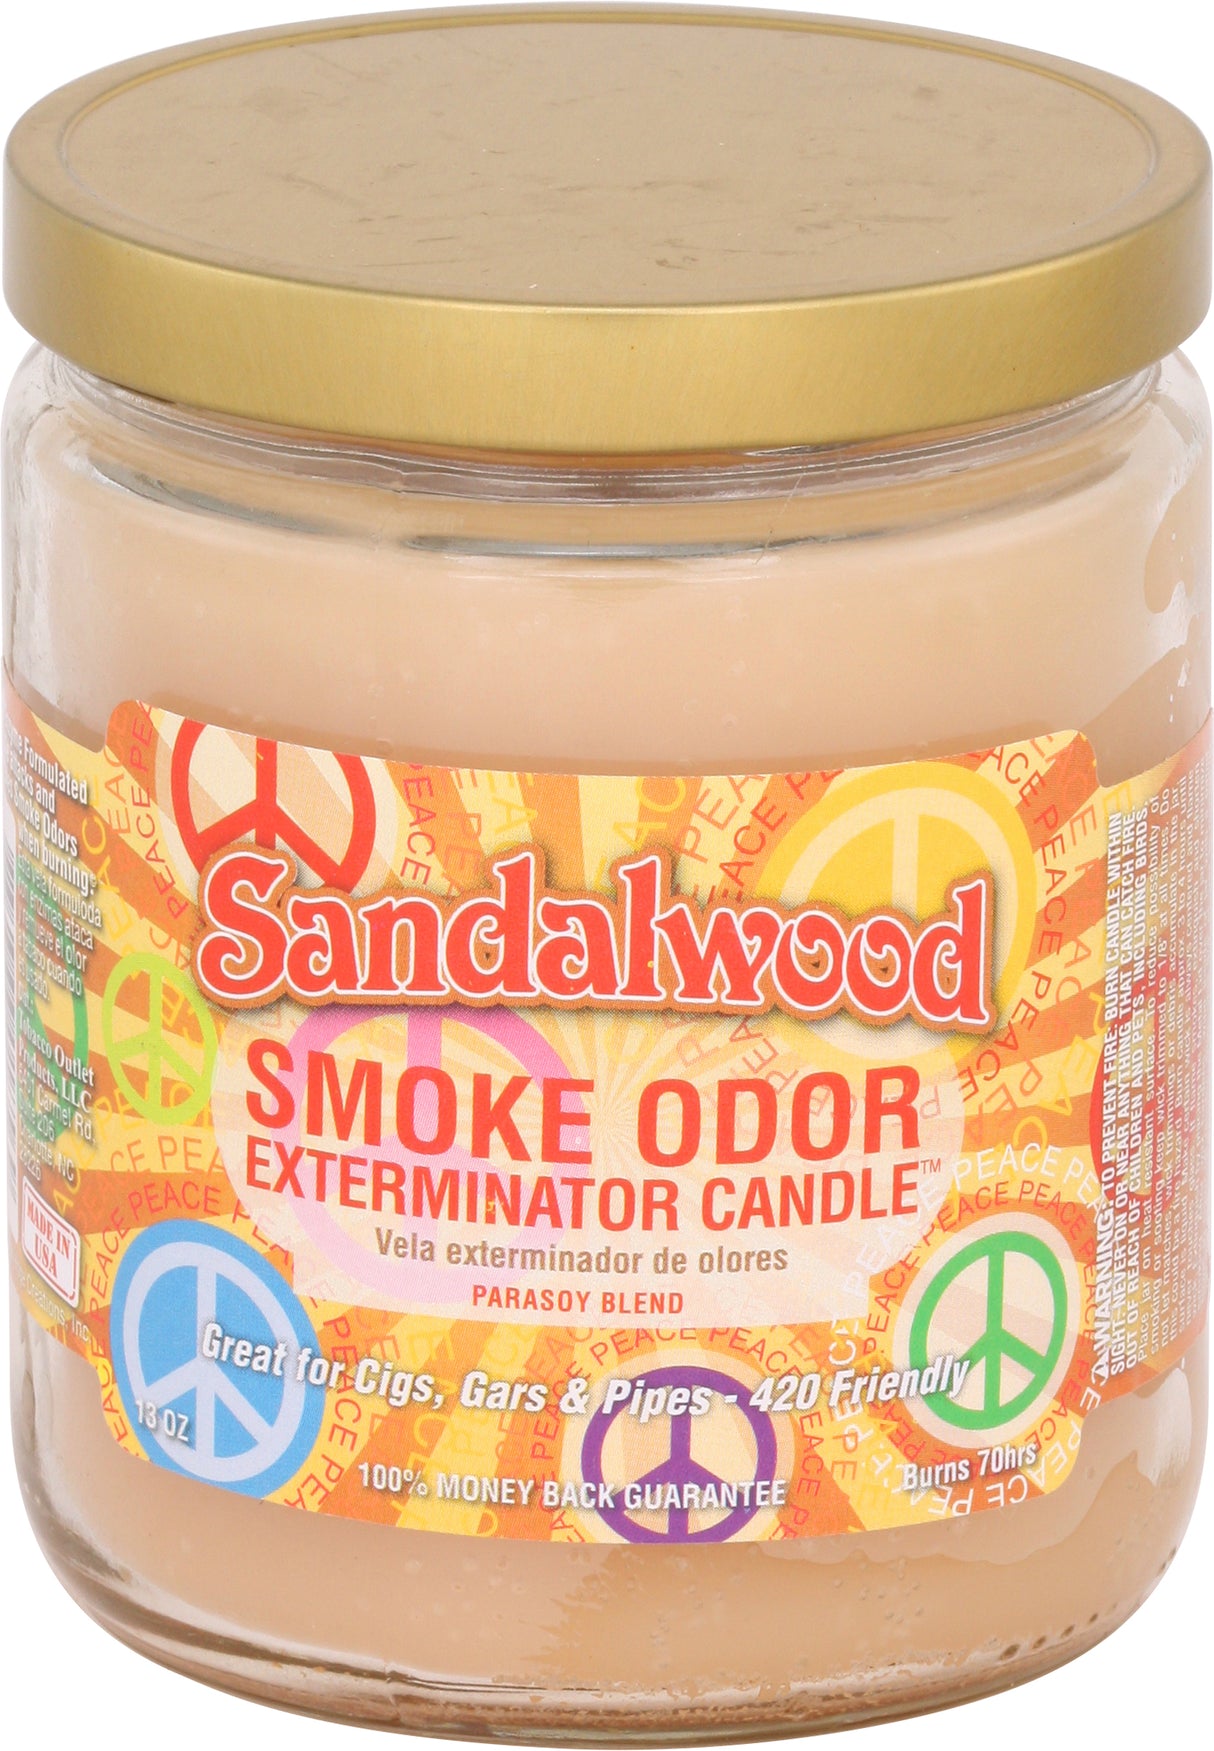 Smoke Odor 13 Oz. Candle: Sandalwood